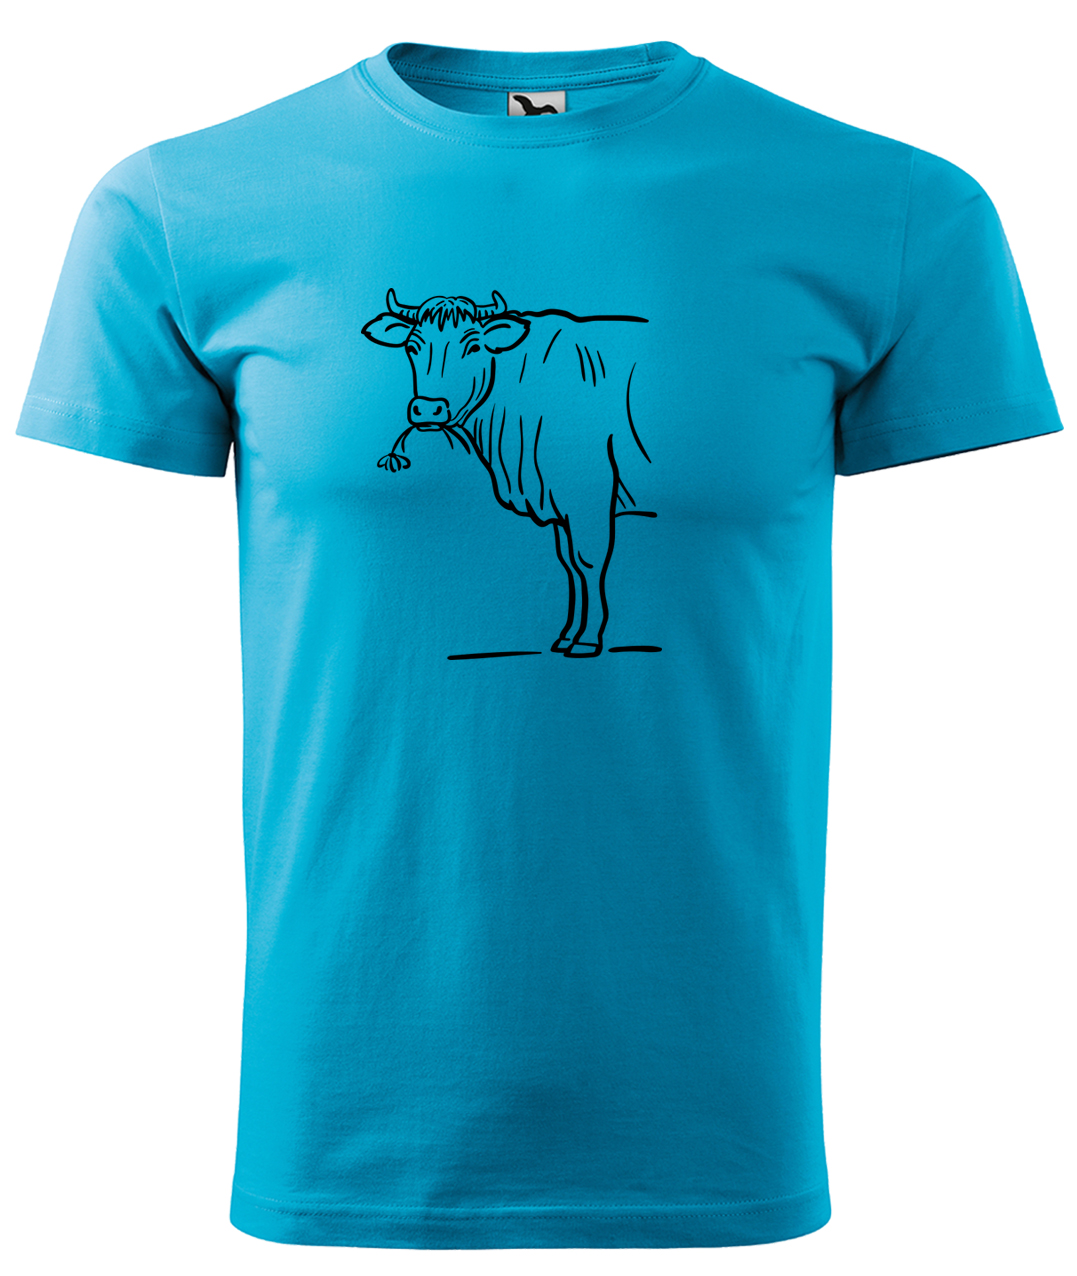 Dětské tričko s krávou - Býk Velikost: 4 roky / 110 cm, Barva: Tyrkysová (44), Délka rukávu: Krátký rukáv